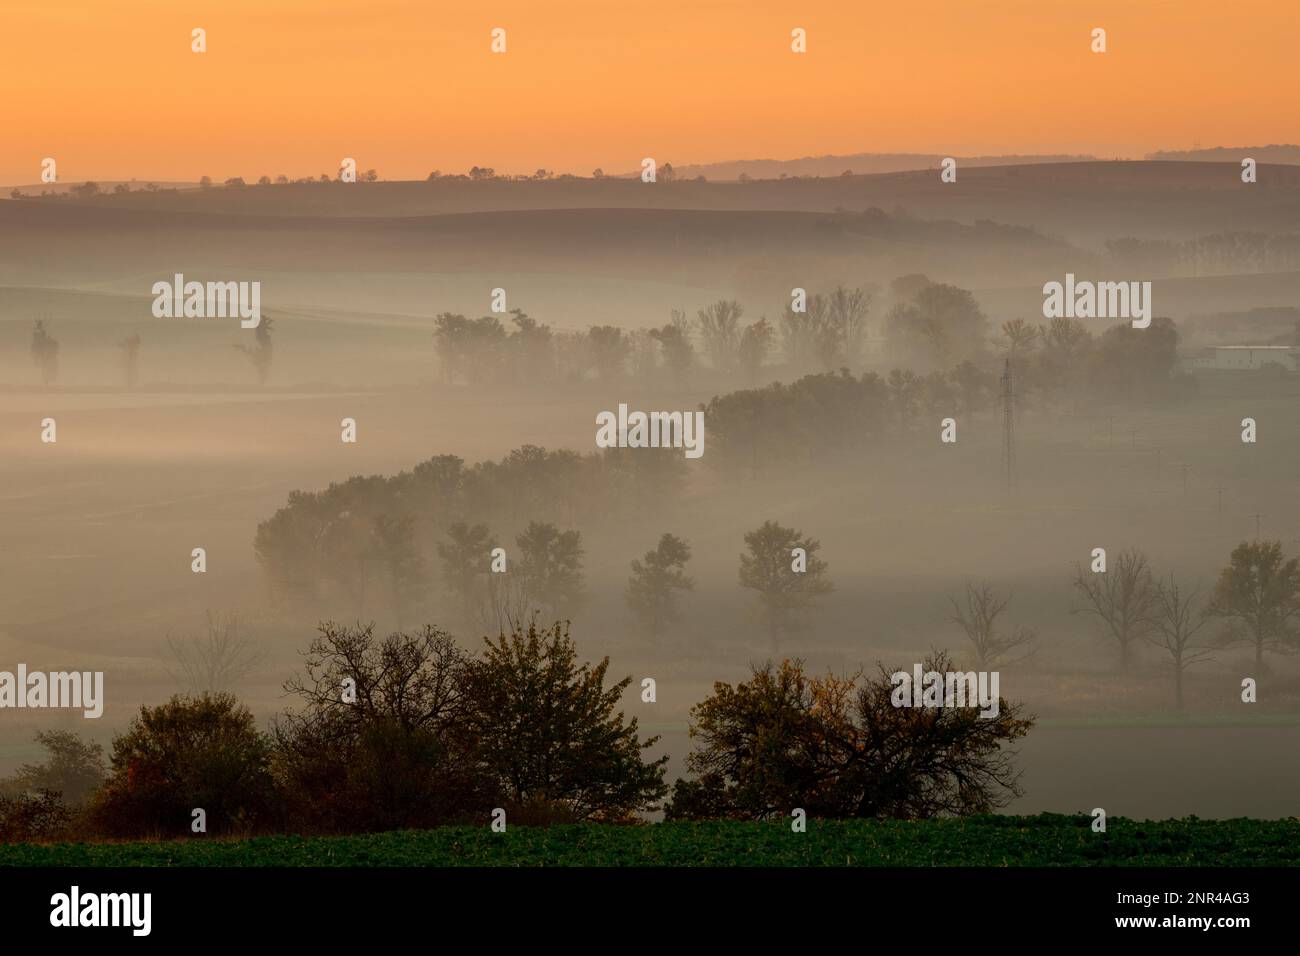 Wunderschöne mährische Felder mit Alleen von Bäumen, die von Morgennebel umgeben sind. Tschechische republik, Mährisch, Tschechische republik Stockfoto